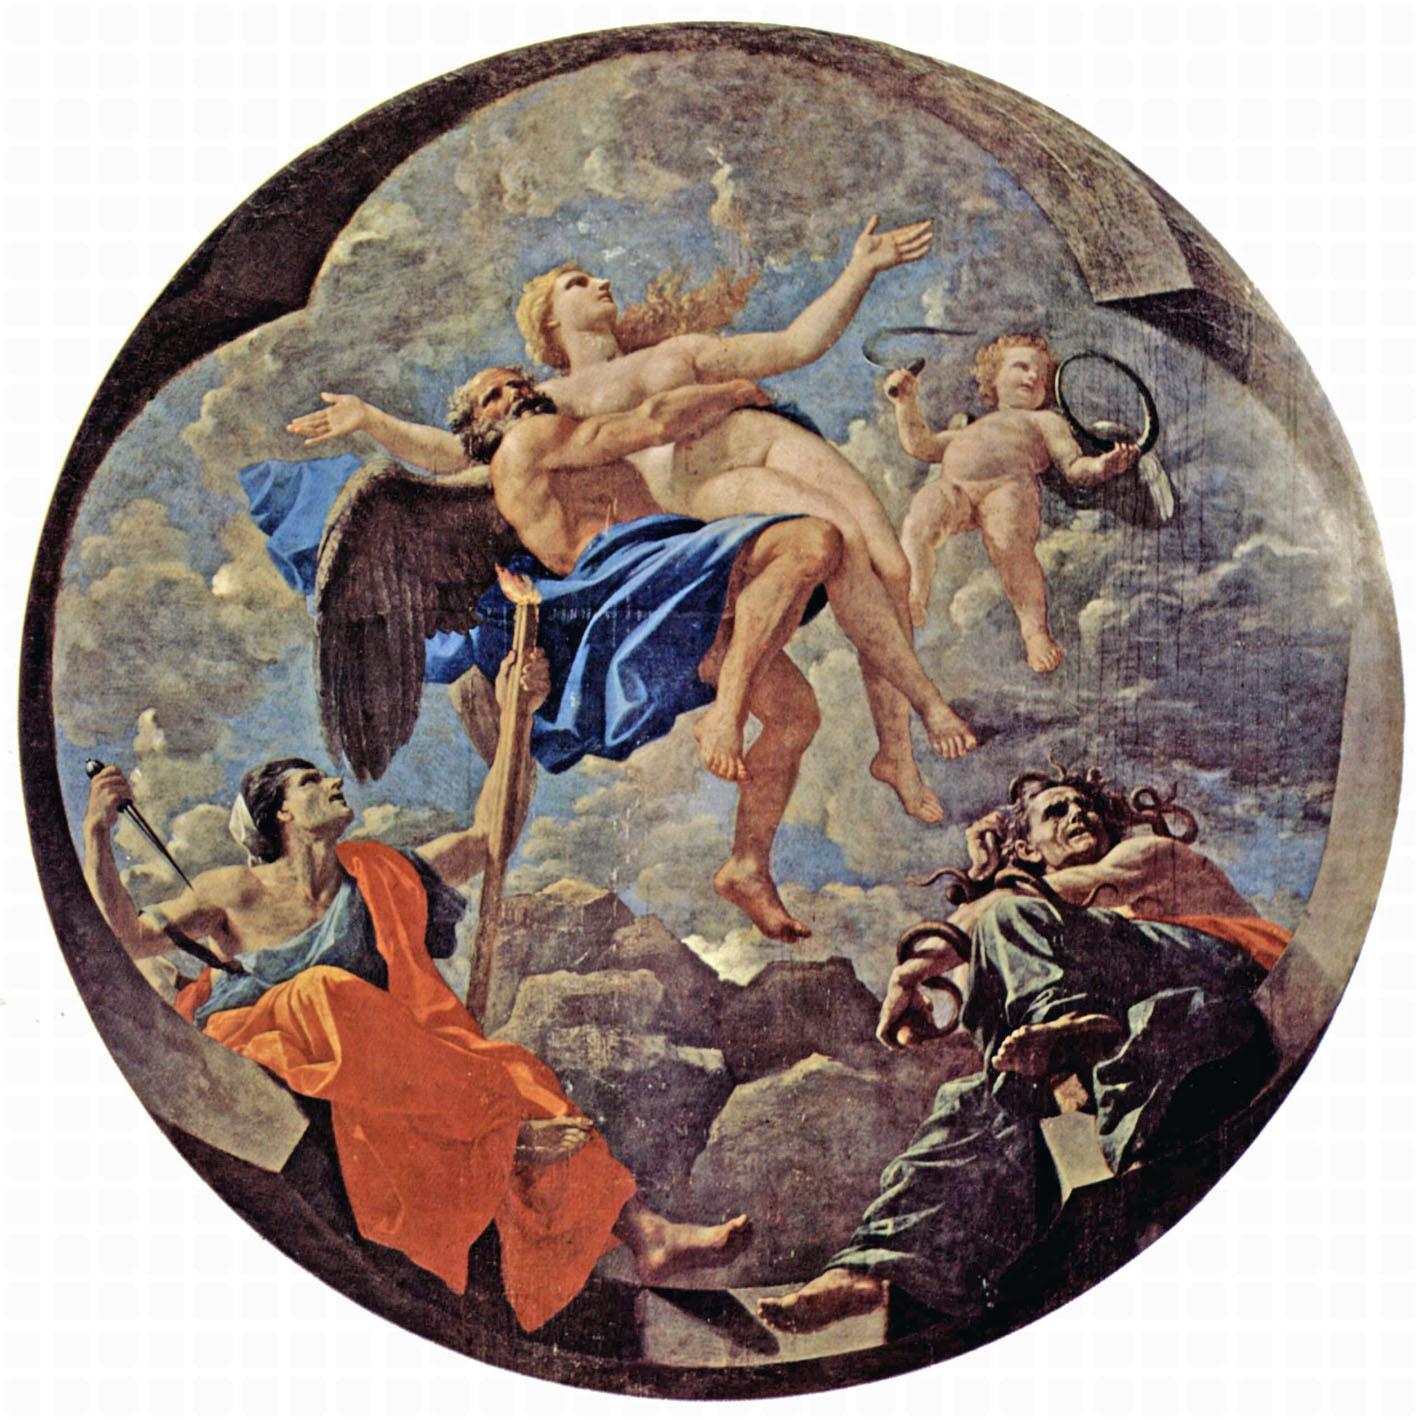 Nicolas Poussin. Le Temps soustrait la Vérité. 1641. Musee du Louvre